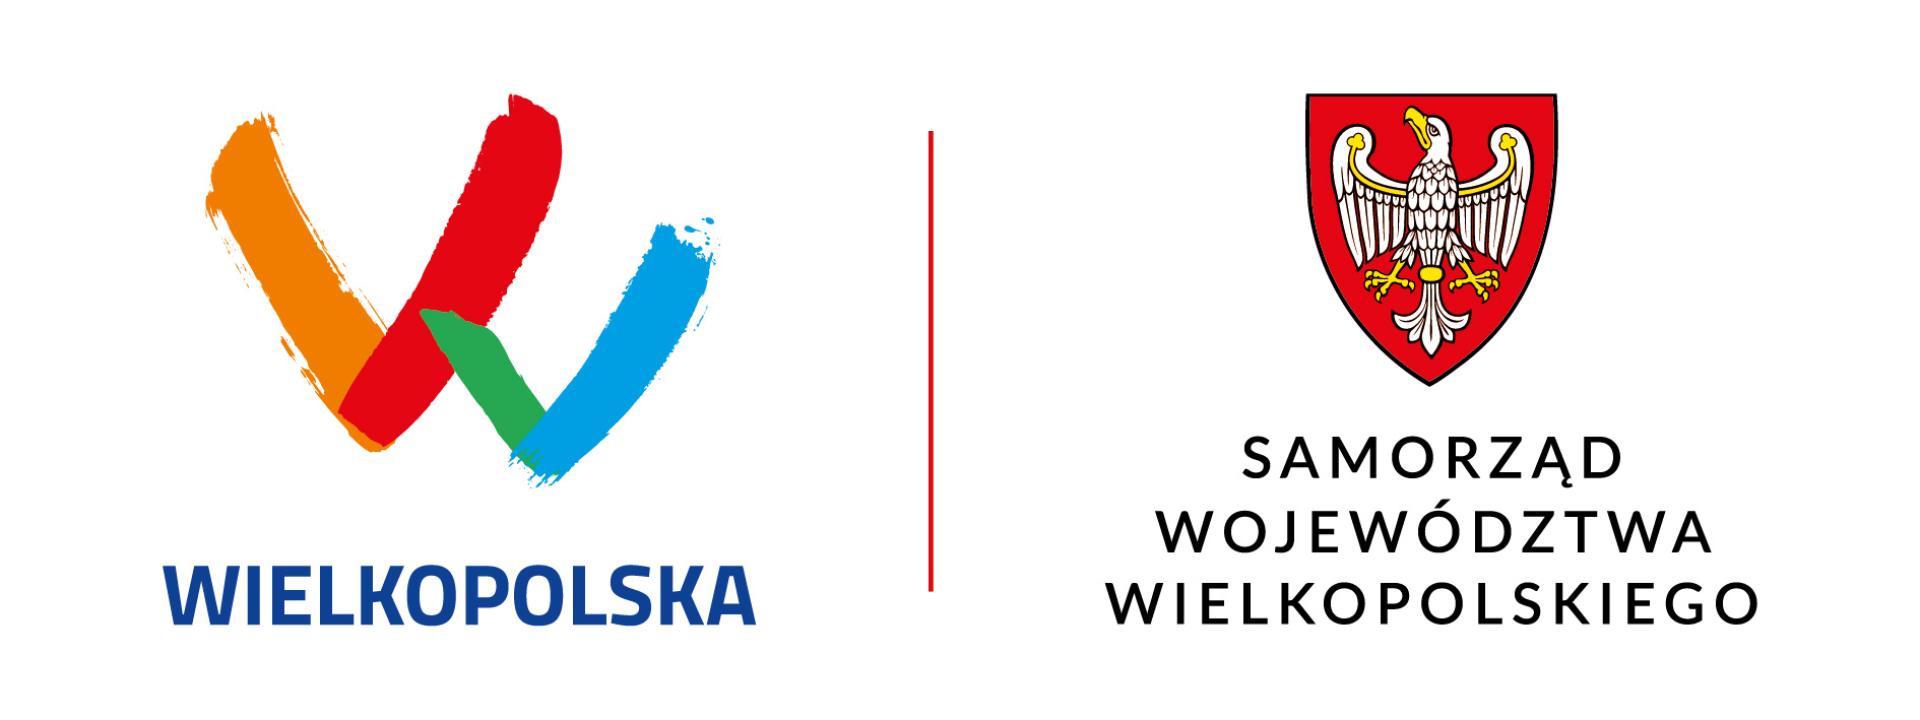 20220804112002 logotypwojewodztwawielkopolskiegoiherbsamorzaduwojewodztwawielkopolskiego